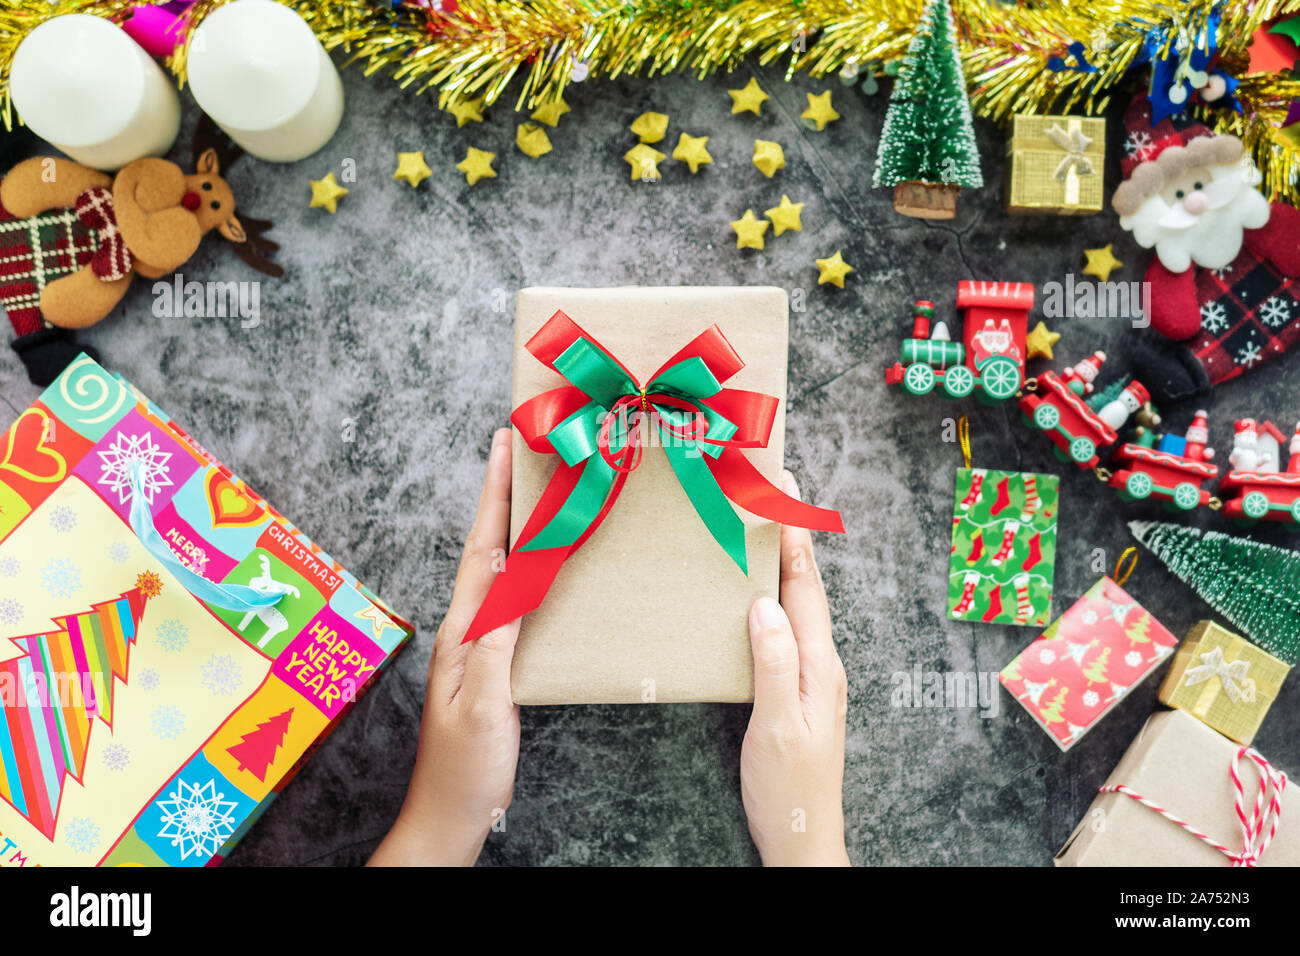 Hand holding gift box de panier pendant la période de Noël et de cadeaux, décorations festival avec ornement de Noël sur la table Banque D'Images